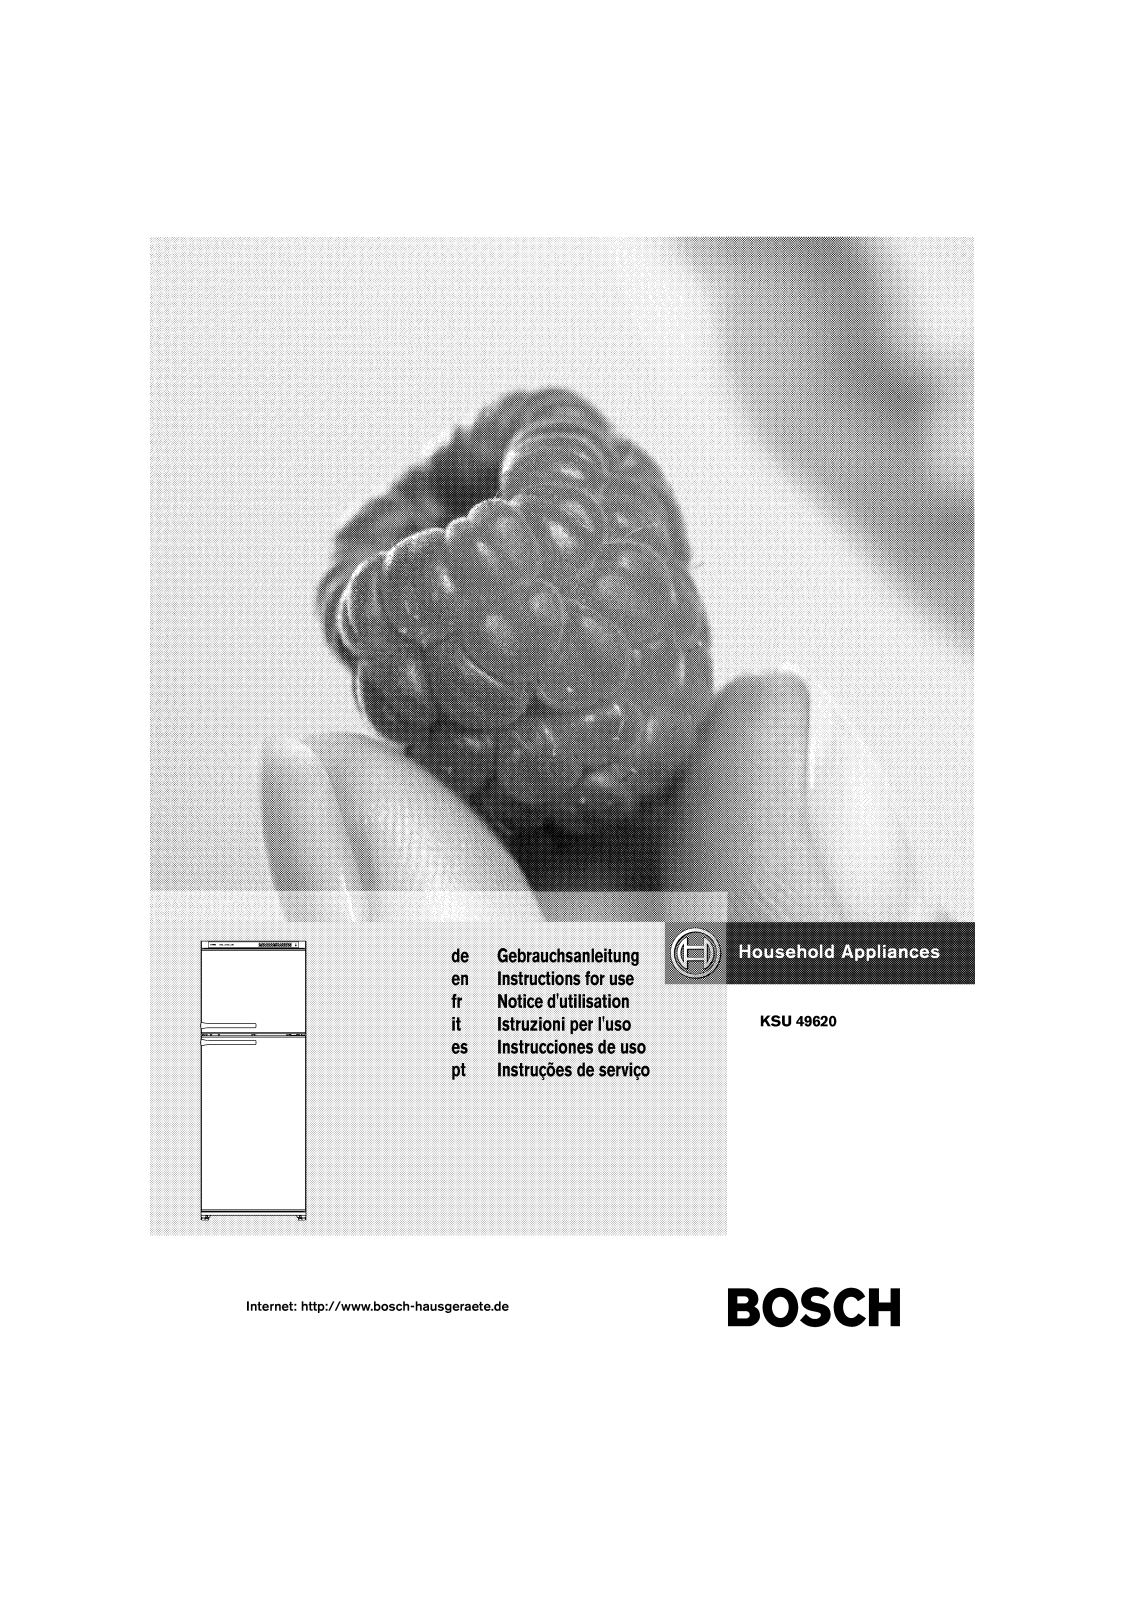 BOSCH KSU49620 User Manual